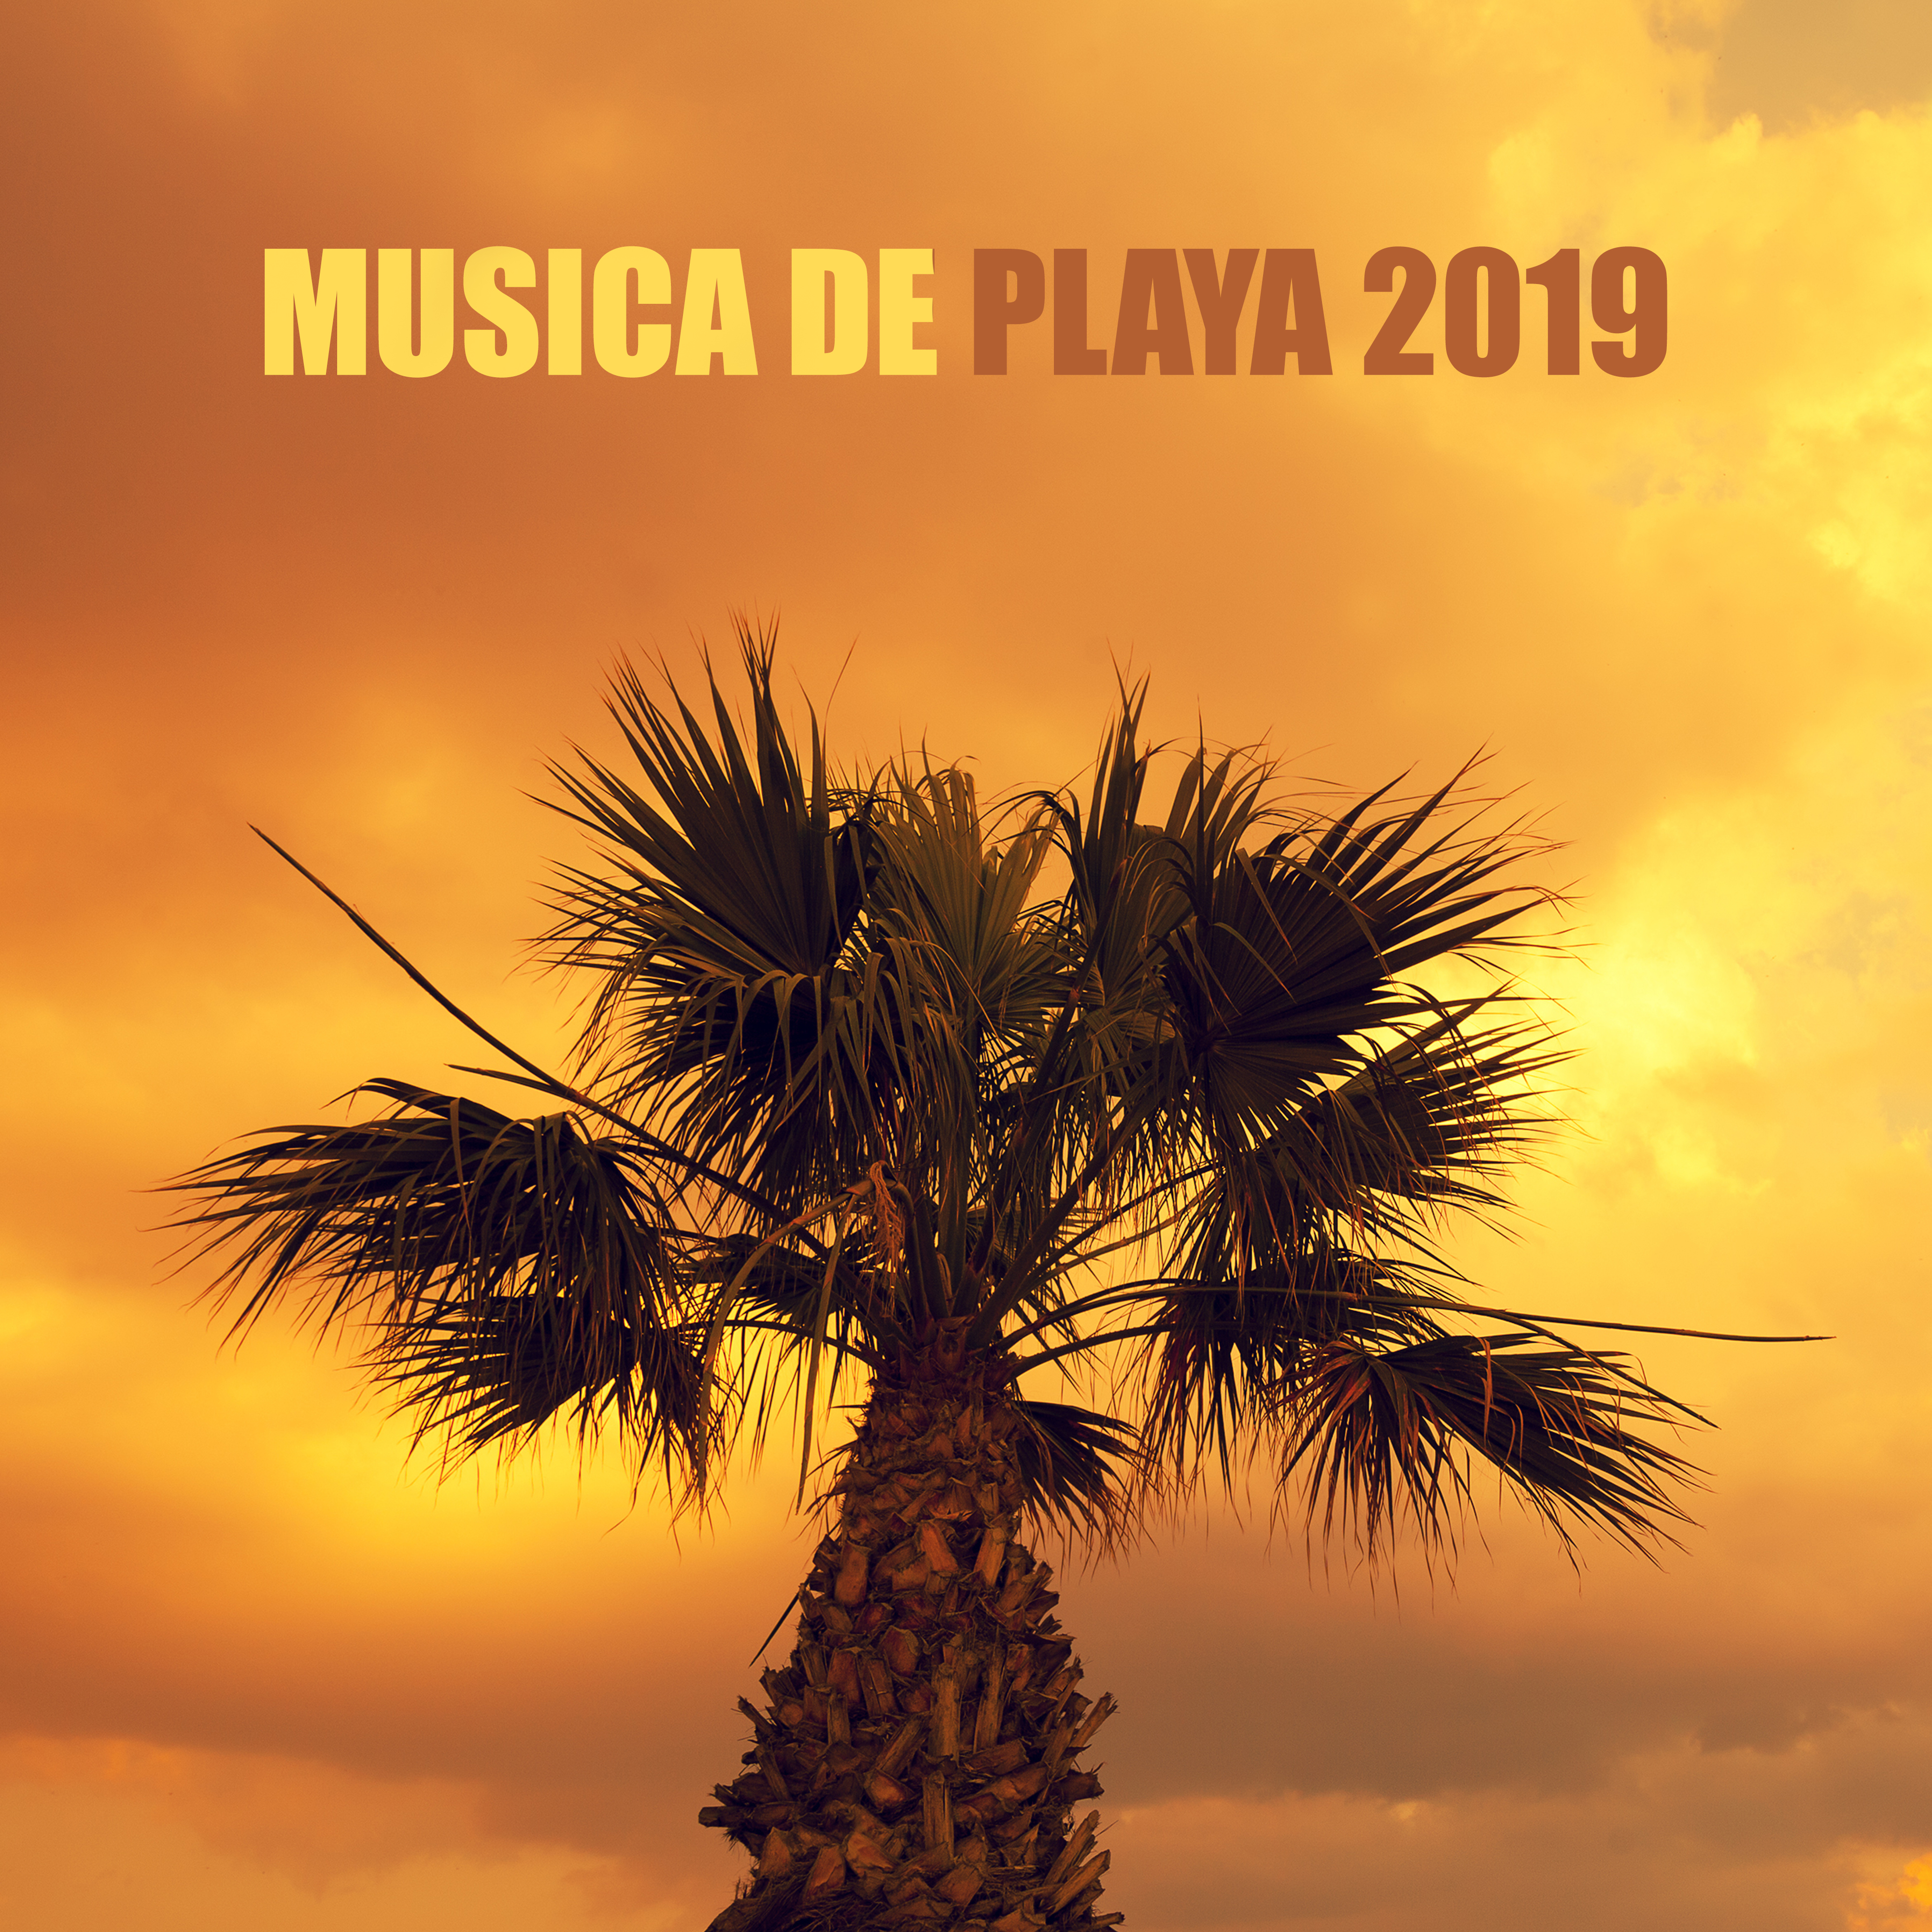 Musica de Playa 2019 – Mejor Chillot 2019, Relajación Profunda, Verano, Cálmese, Relajación Pura, Relájate en la Playa